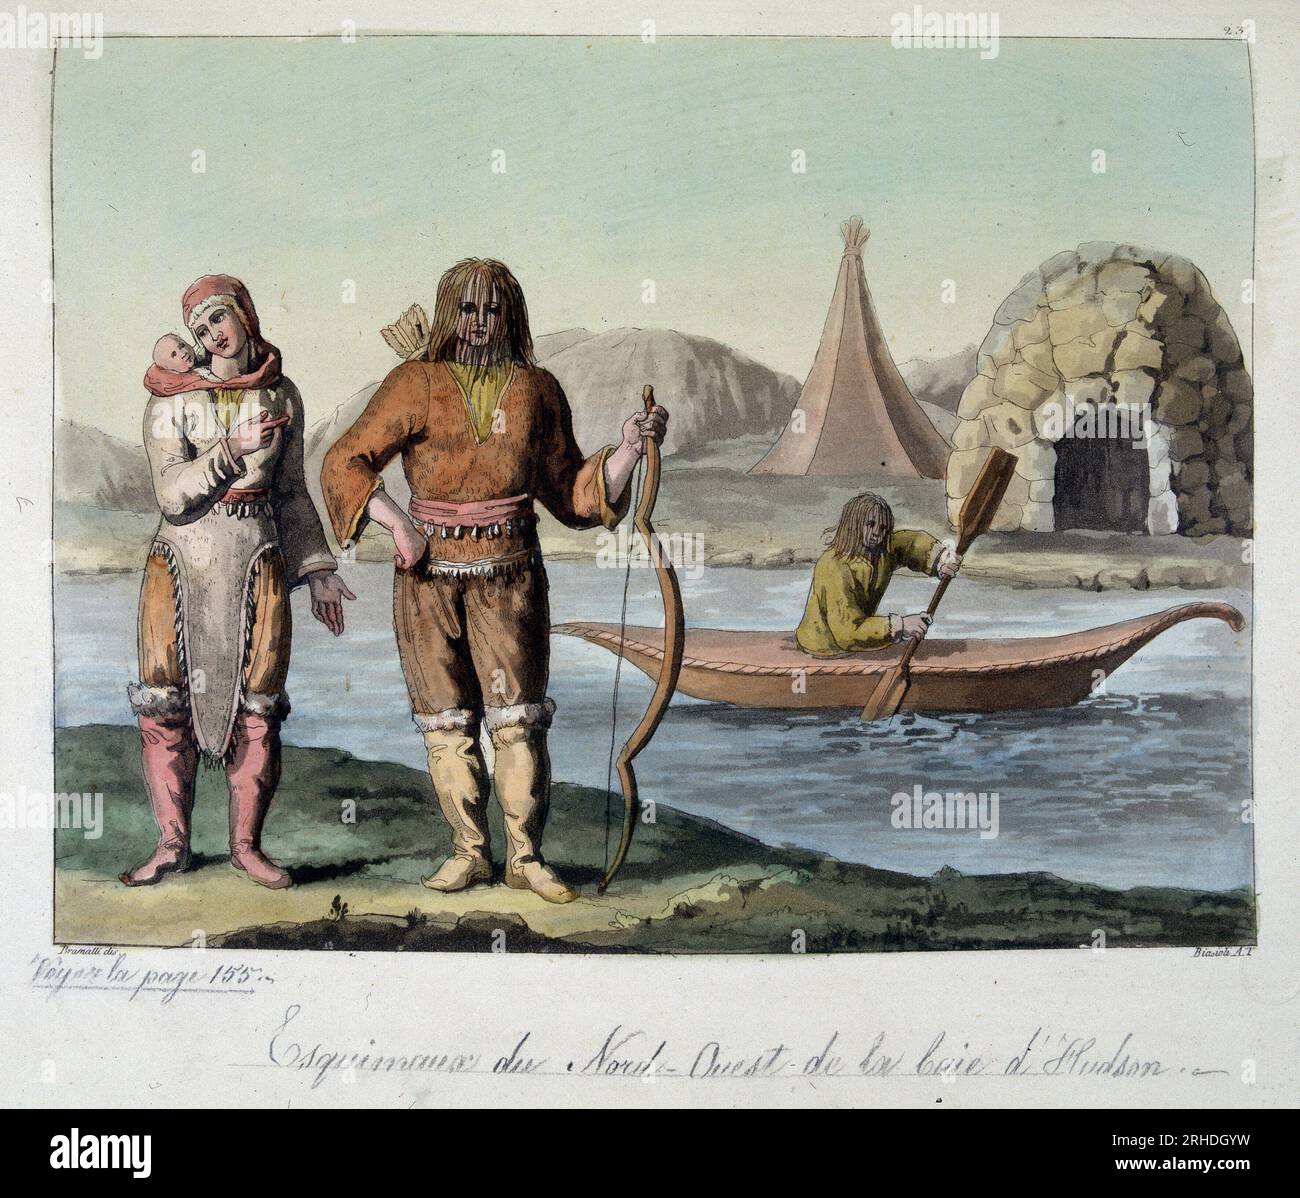 Esquimaux du nord ouest de la baie d'Hudson - in 'Le costume ancien et modern' par Ferrario, 1819-20 Stockfoto